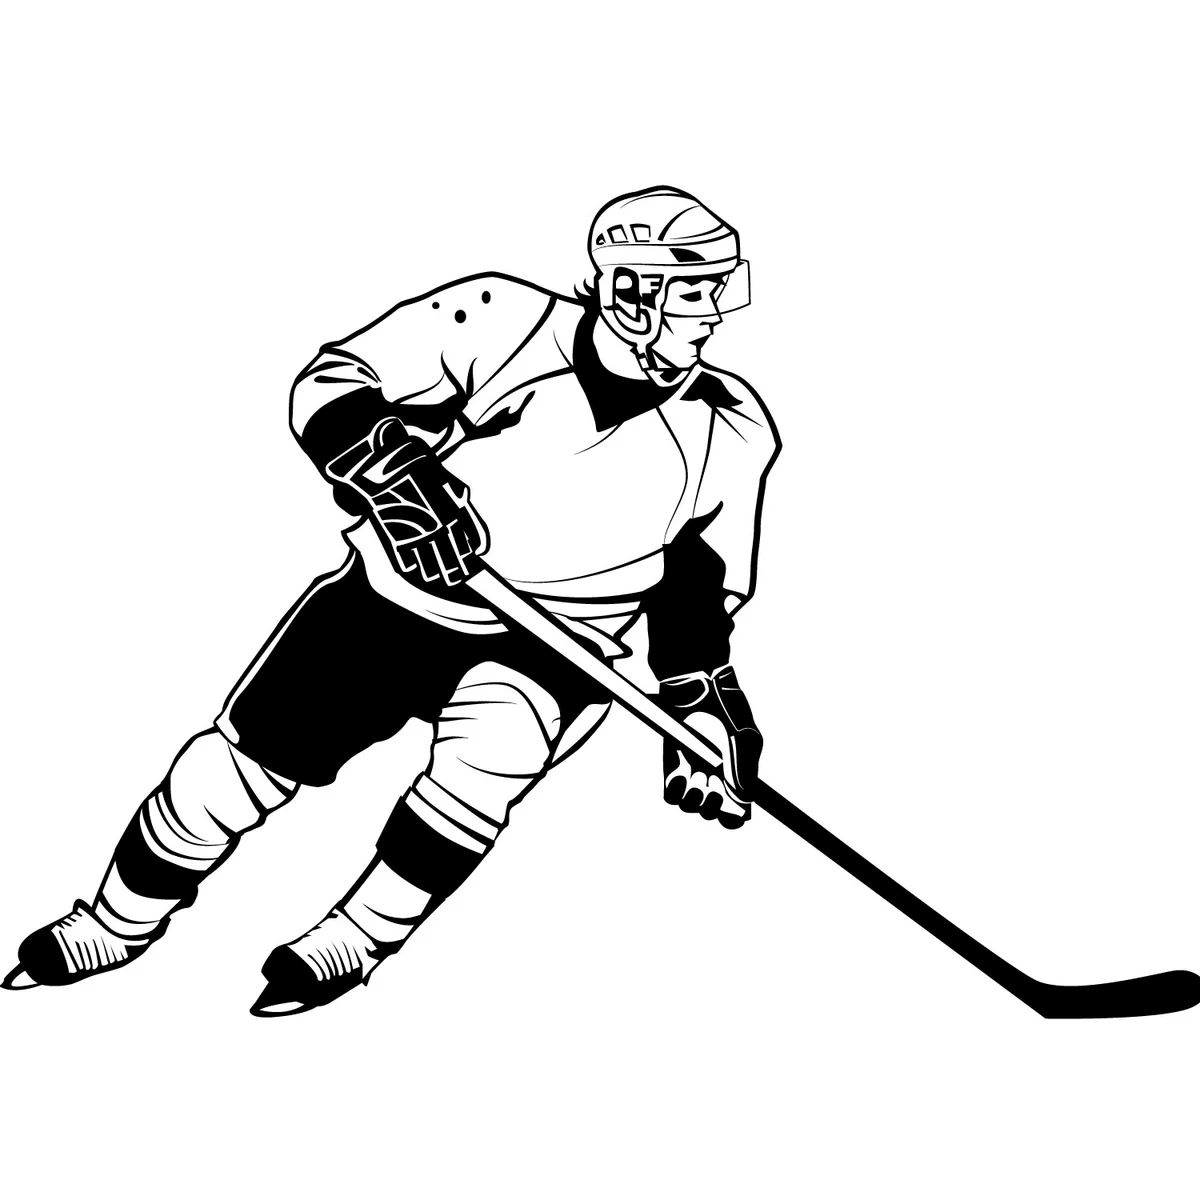 НХЛ силуэт хоккеиста